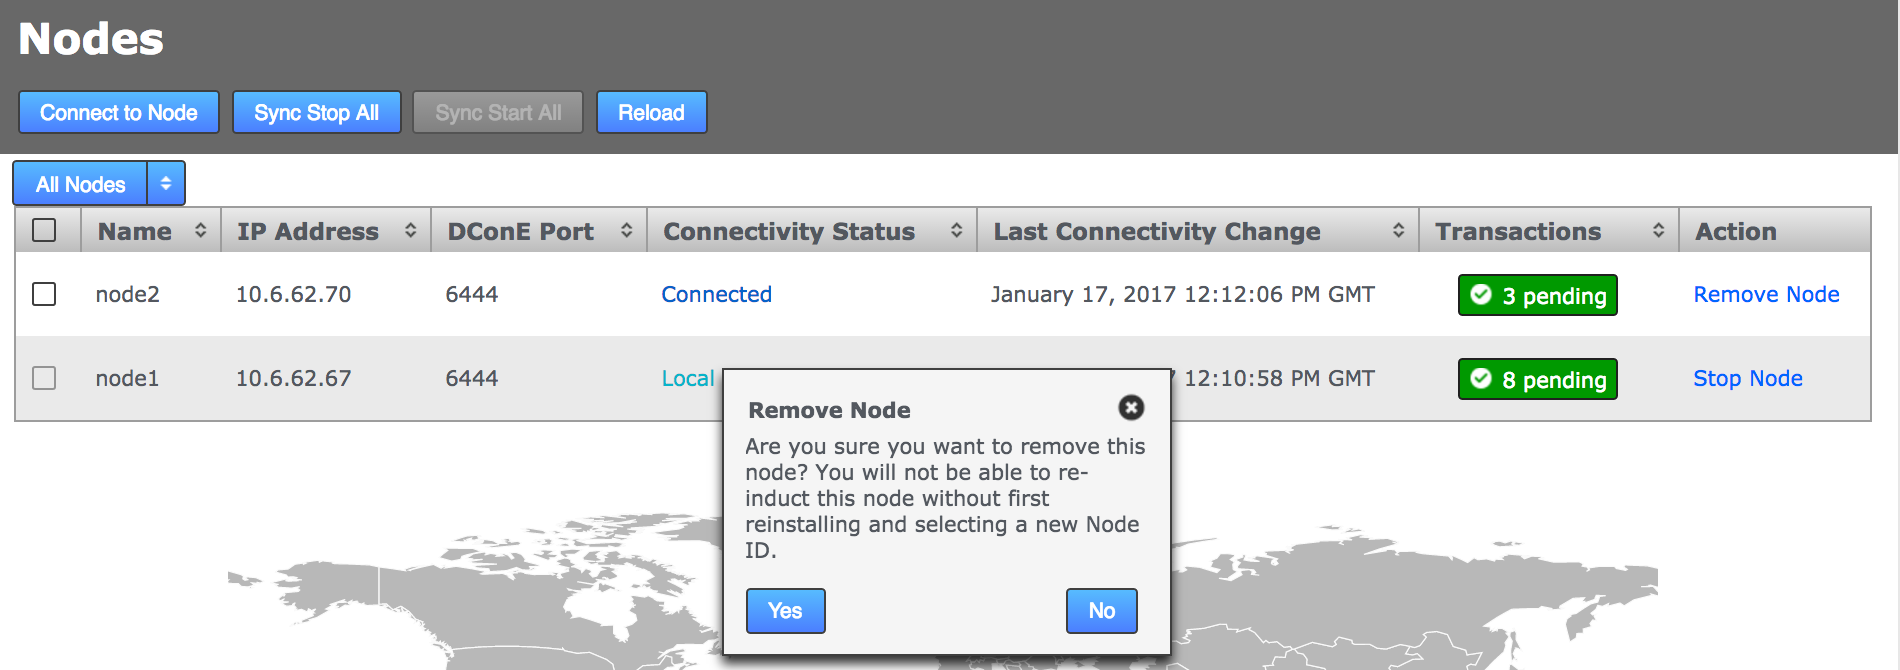 gms node remove2 1.9